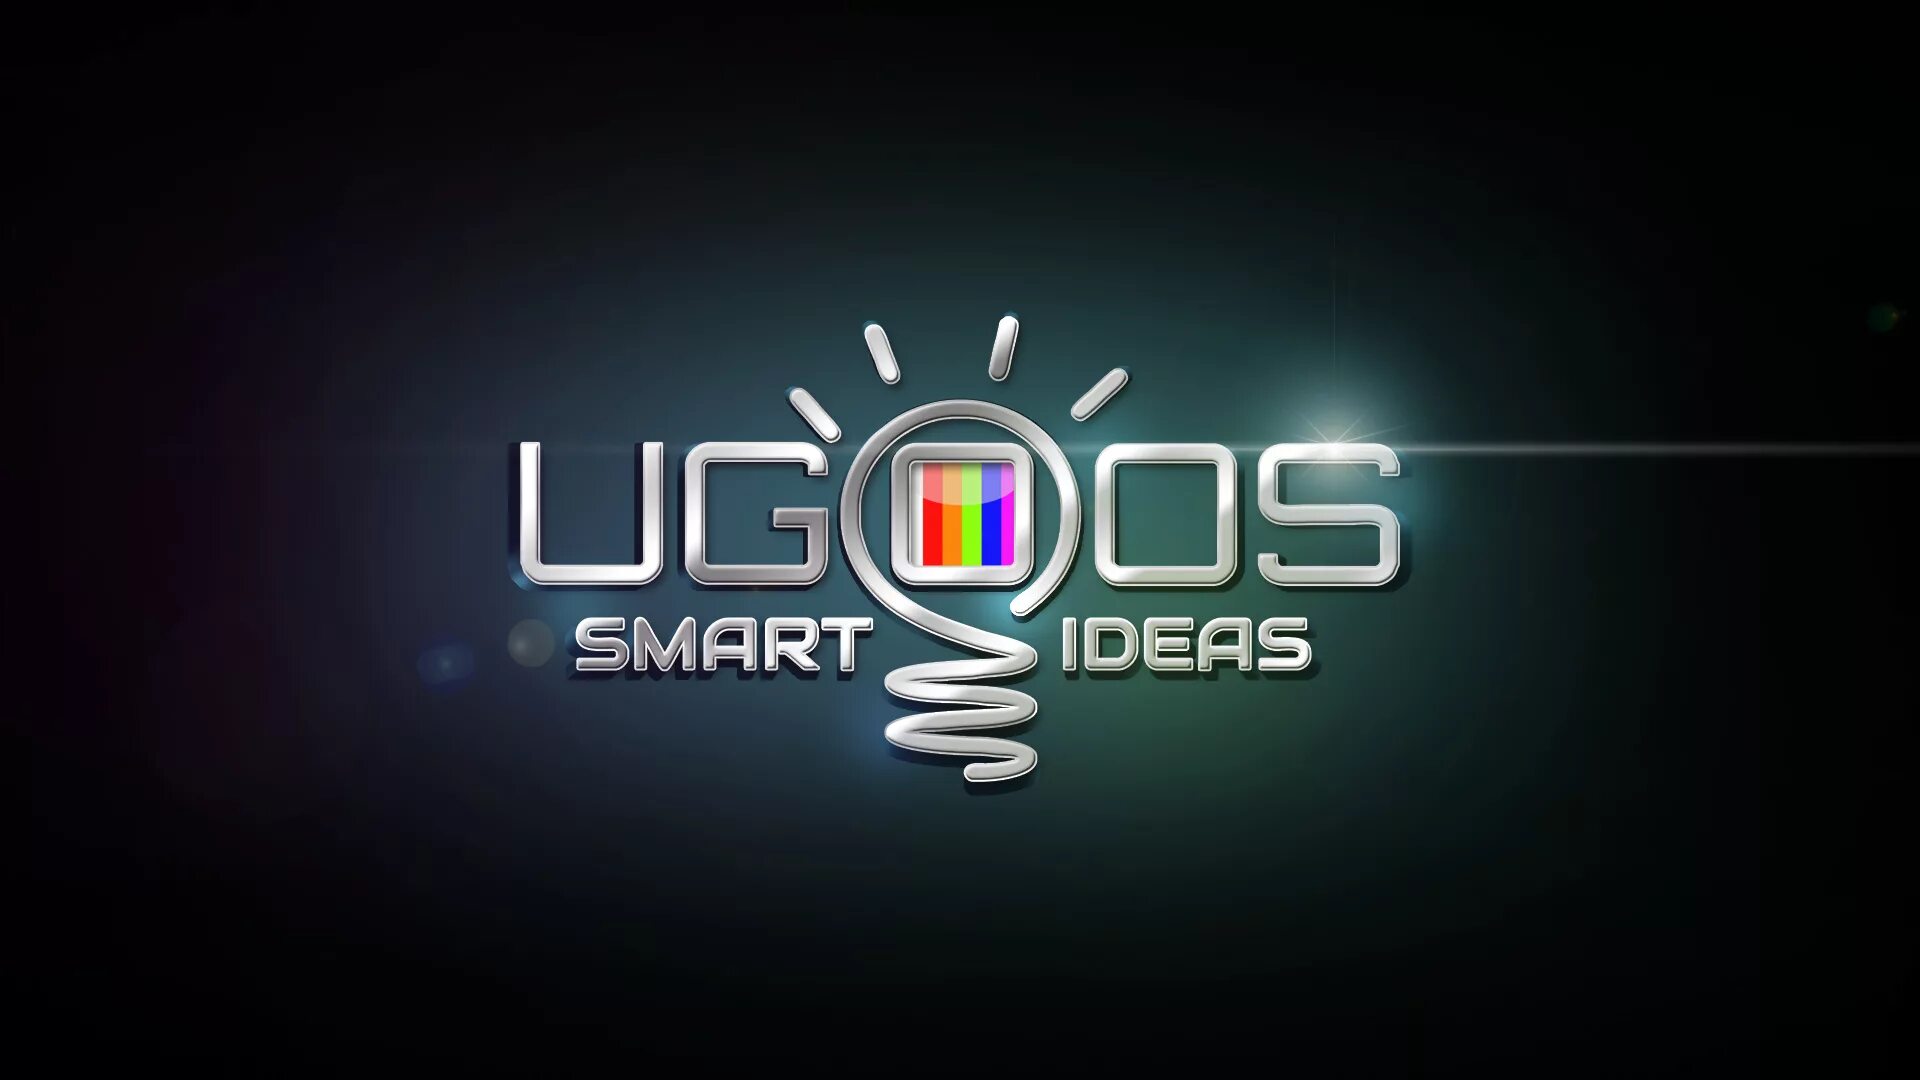 Андроид 4.4 телевизор. Ugoos. Заставка ugoos. Ugoos логотип. Обои для ТВ бокса ugoos.